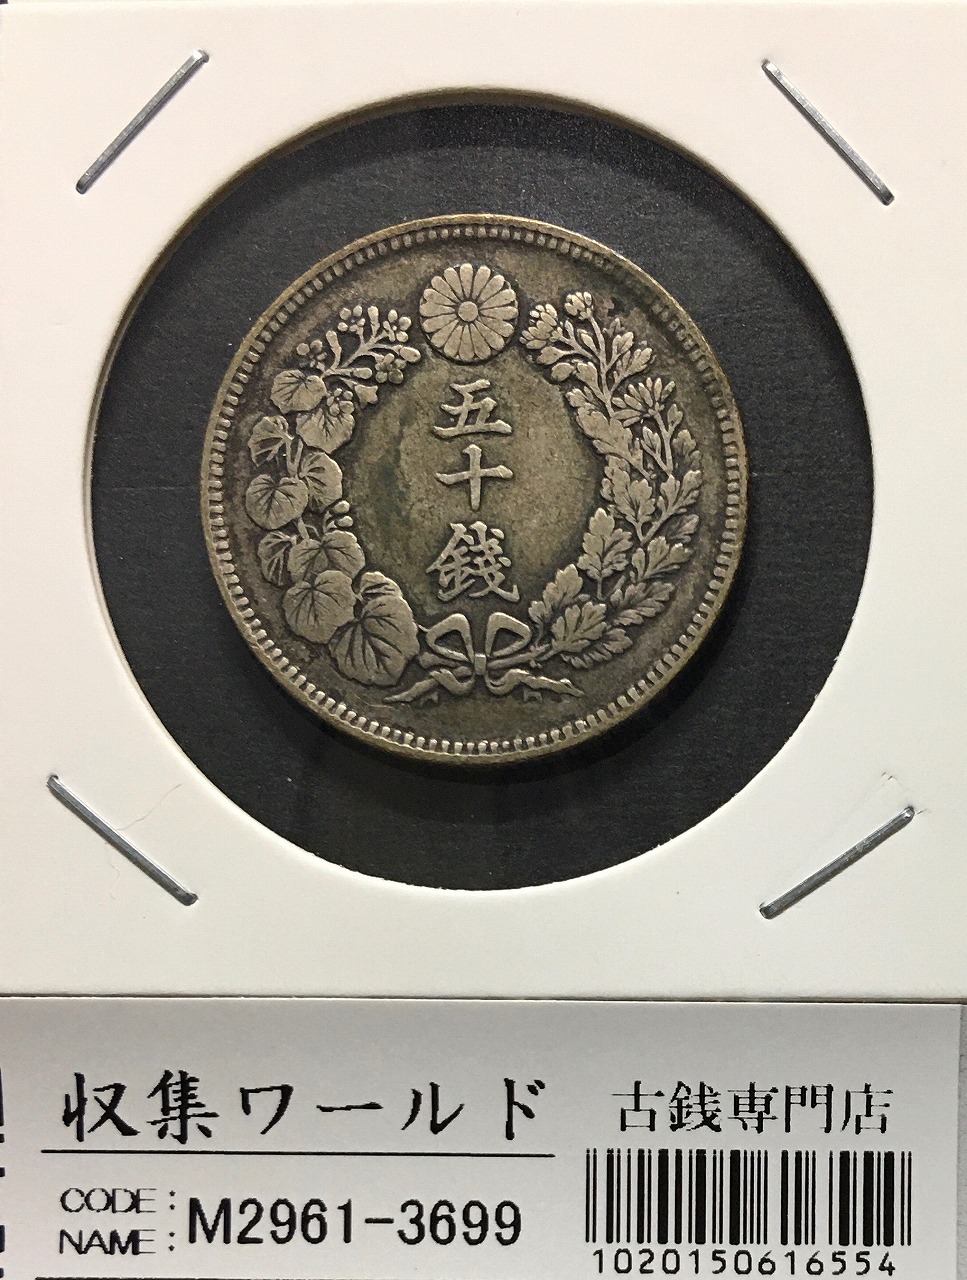 旭日 50銭銀貨 明治39年銘(1906年) 近代銀貨シリーズ/特年 流通美品